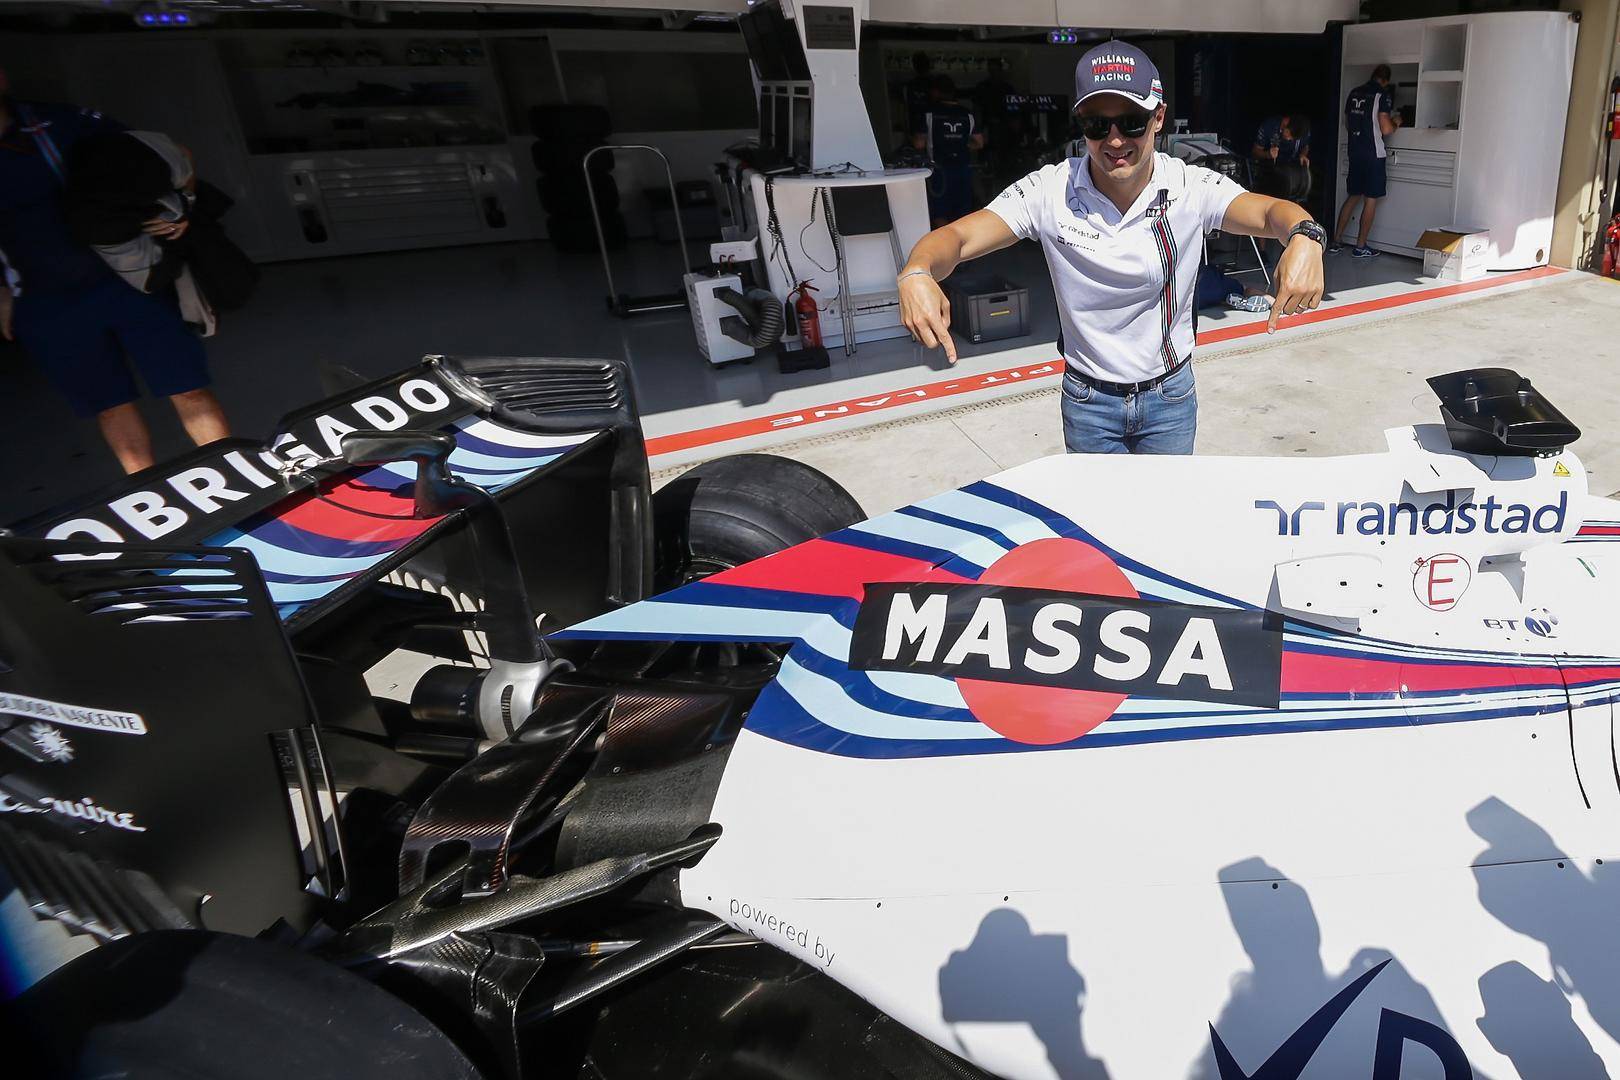 前f1车手马萨起诉国际汽联,要求其重新授予他2008年的冠军